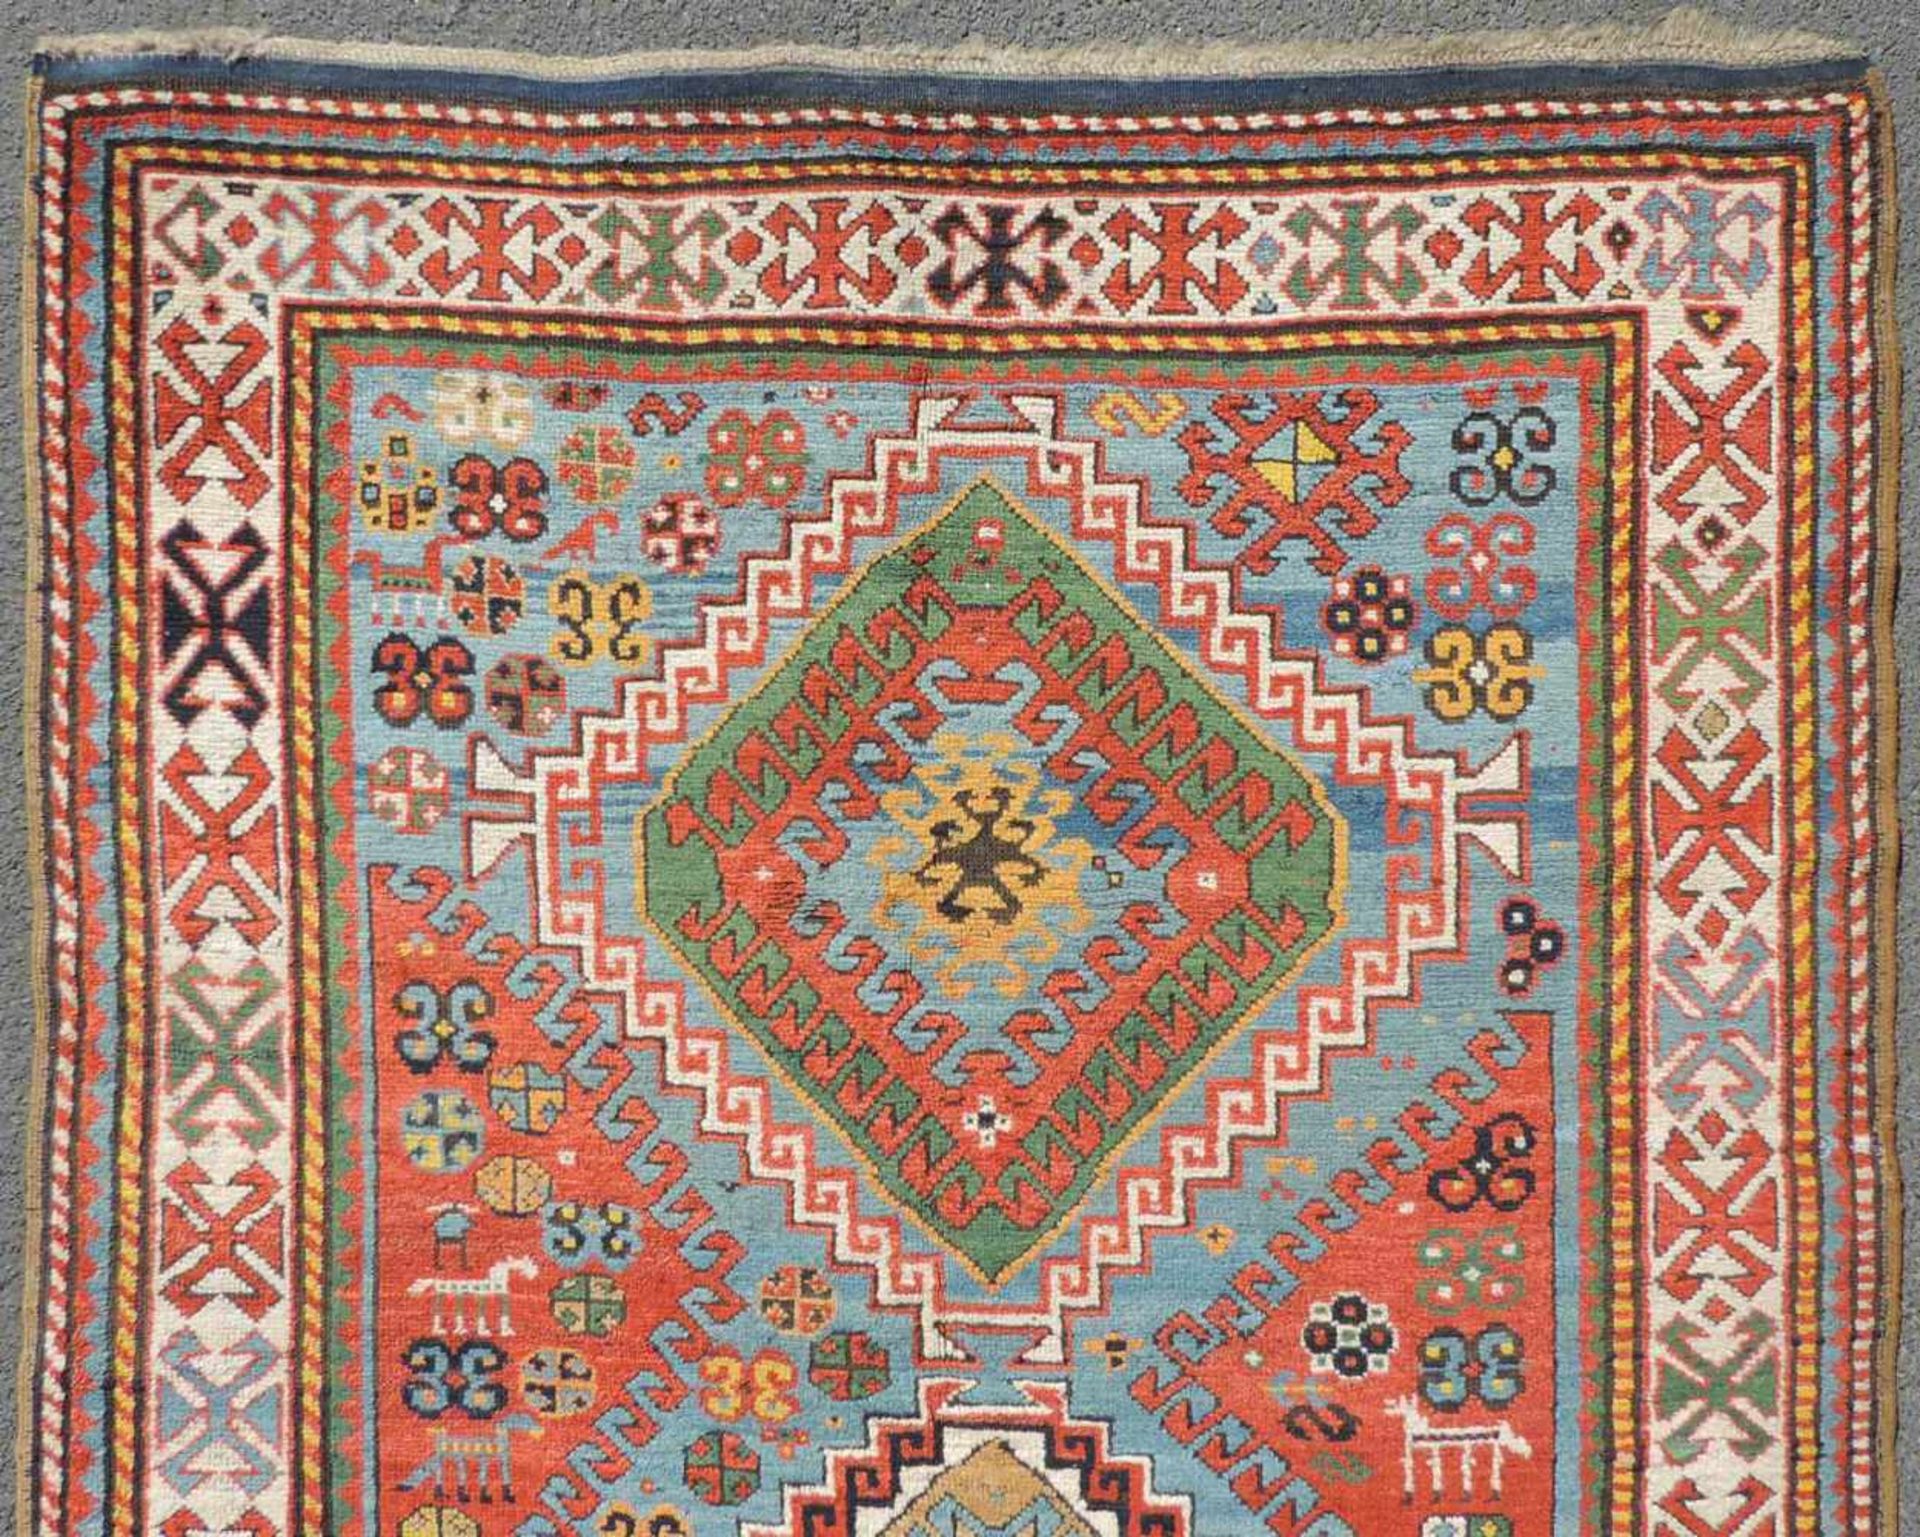 Kasak Karabagh Teppich. Kaukasus, antik um 1870.247 cm x 140 cm. Handgeknüpft. Wolle auf Wolle. - Image 4 of 6